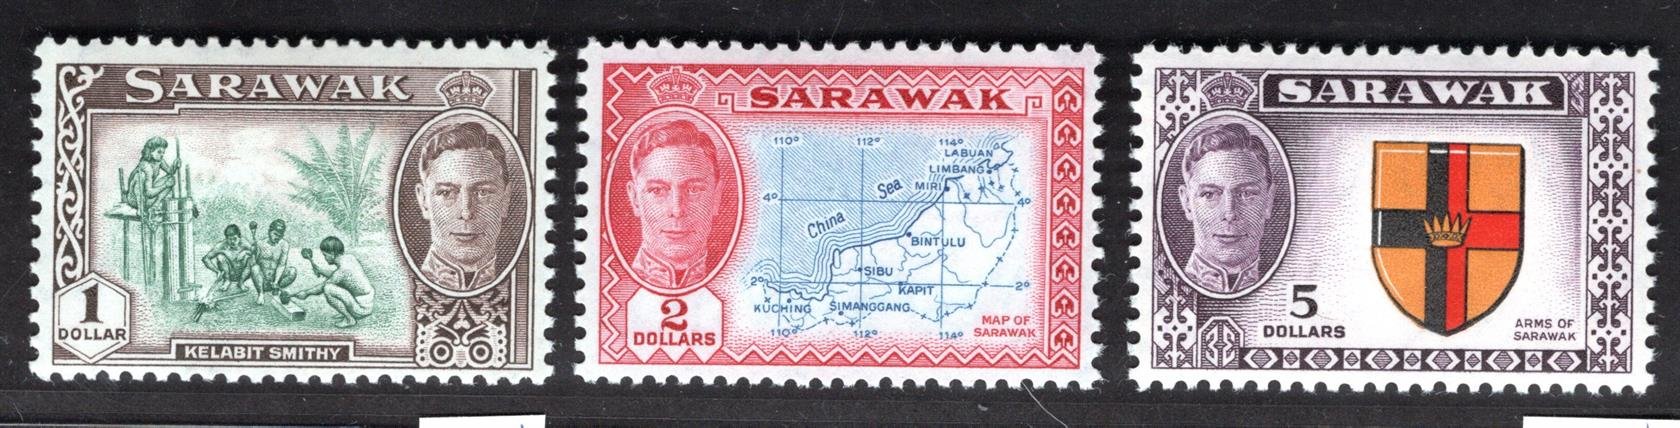 Sarawak - SG 183 - 5